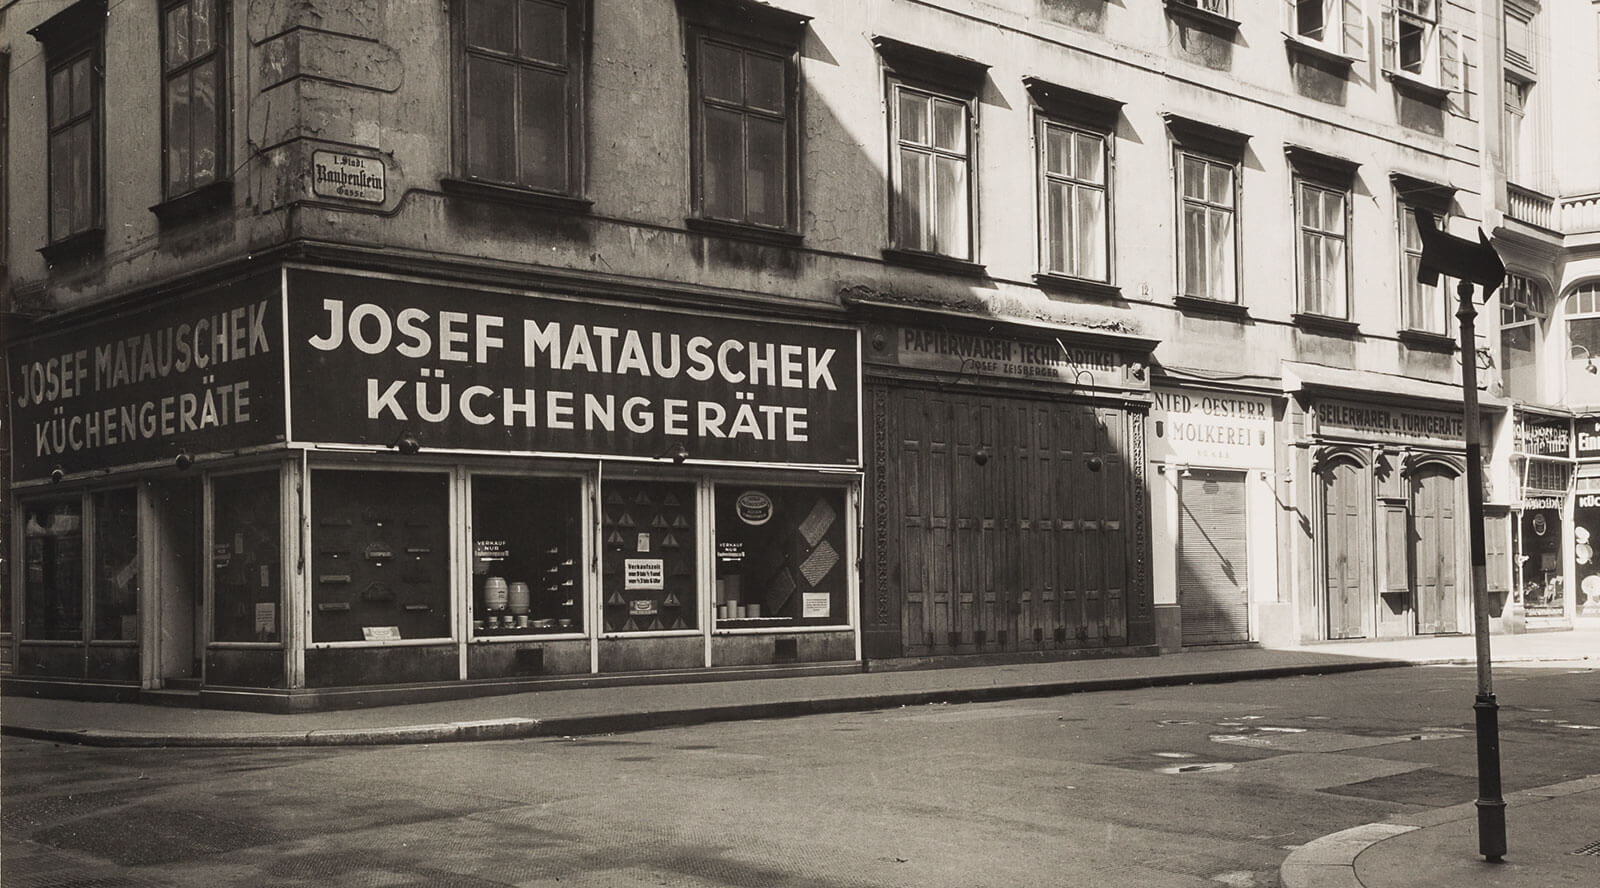 Haushaltswarengeschäft Josef Matauschek, Rauhensteingasse 12, 1010 Wien, Foto: Bruno Reiffenstein, 1942, Wien Museum 